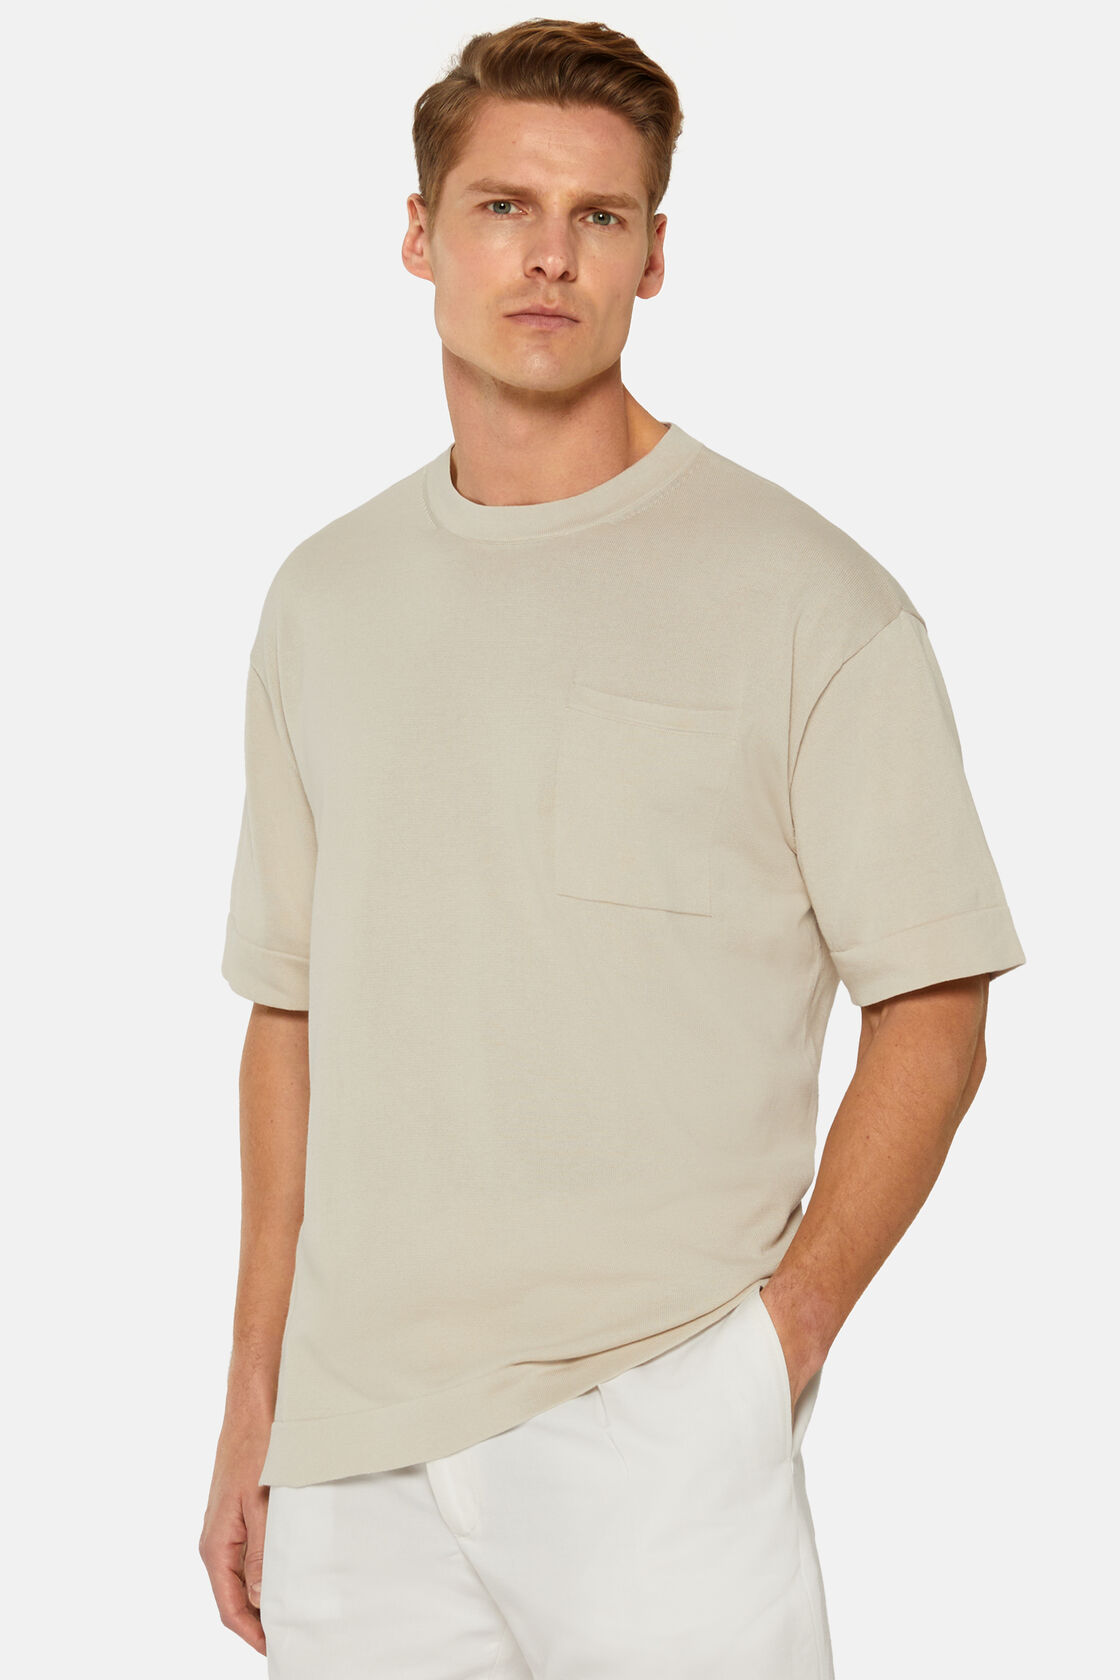 Zandkleurig T-shirt van gebreid pimakatoen, Sand, hi-res